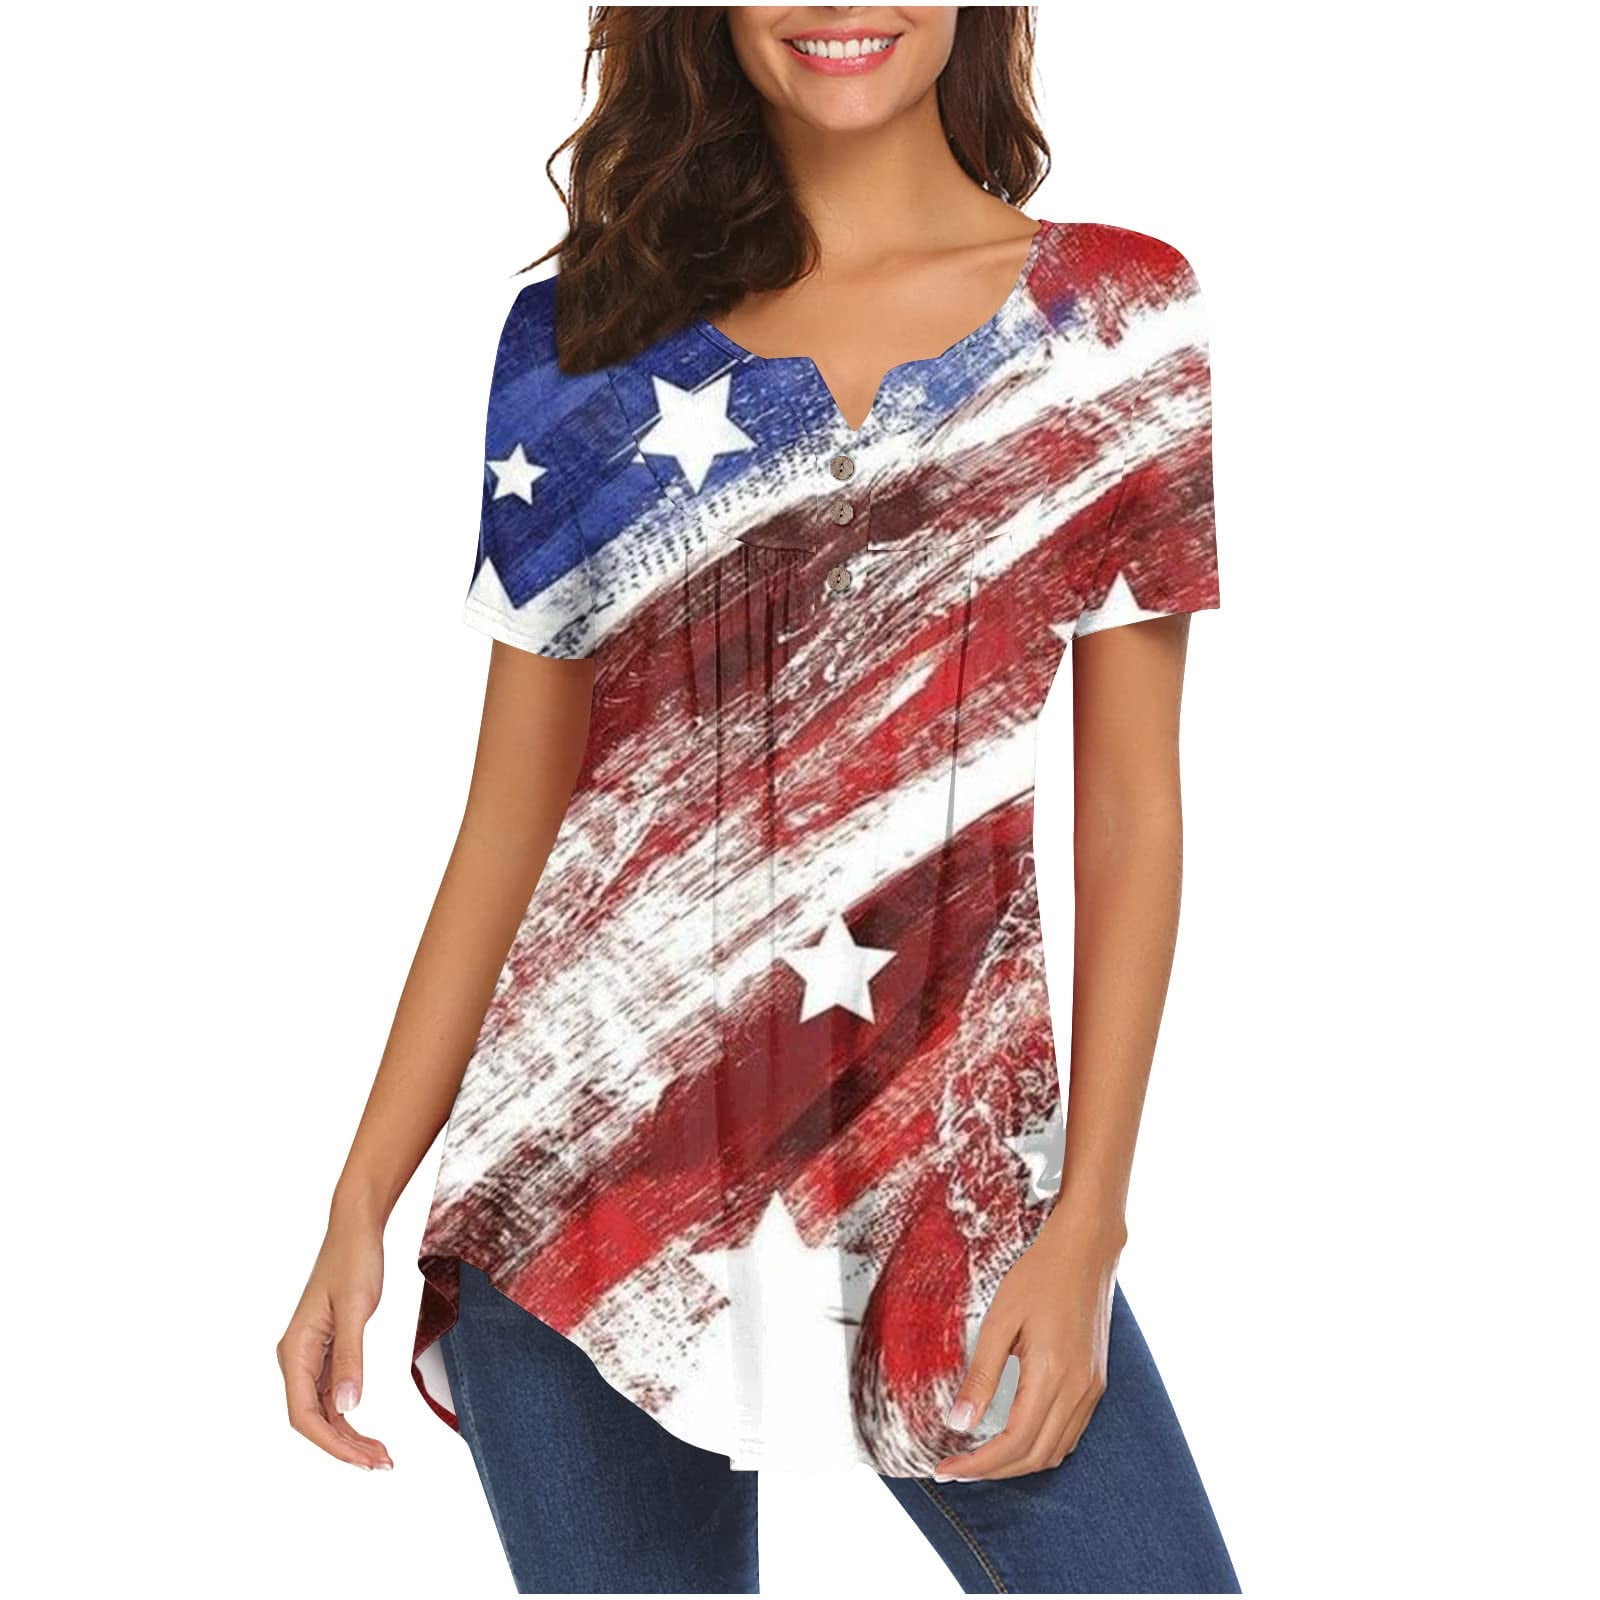 Yyeselk American Flag Tie Dye Shirts Women Patriotic Blouses 4th of ...